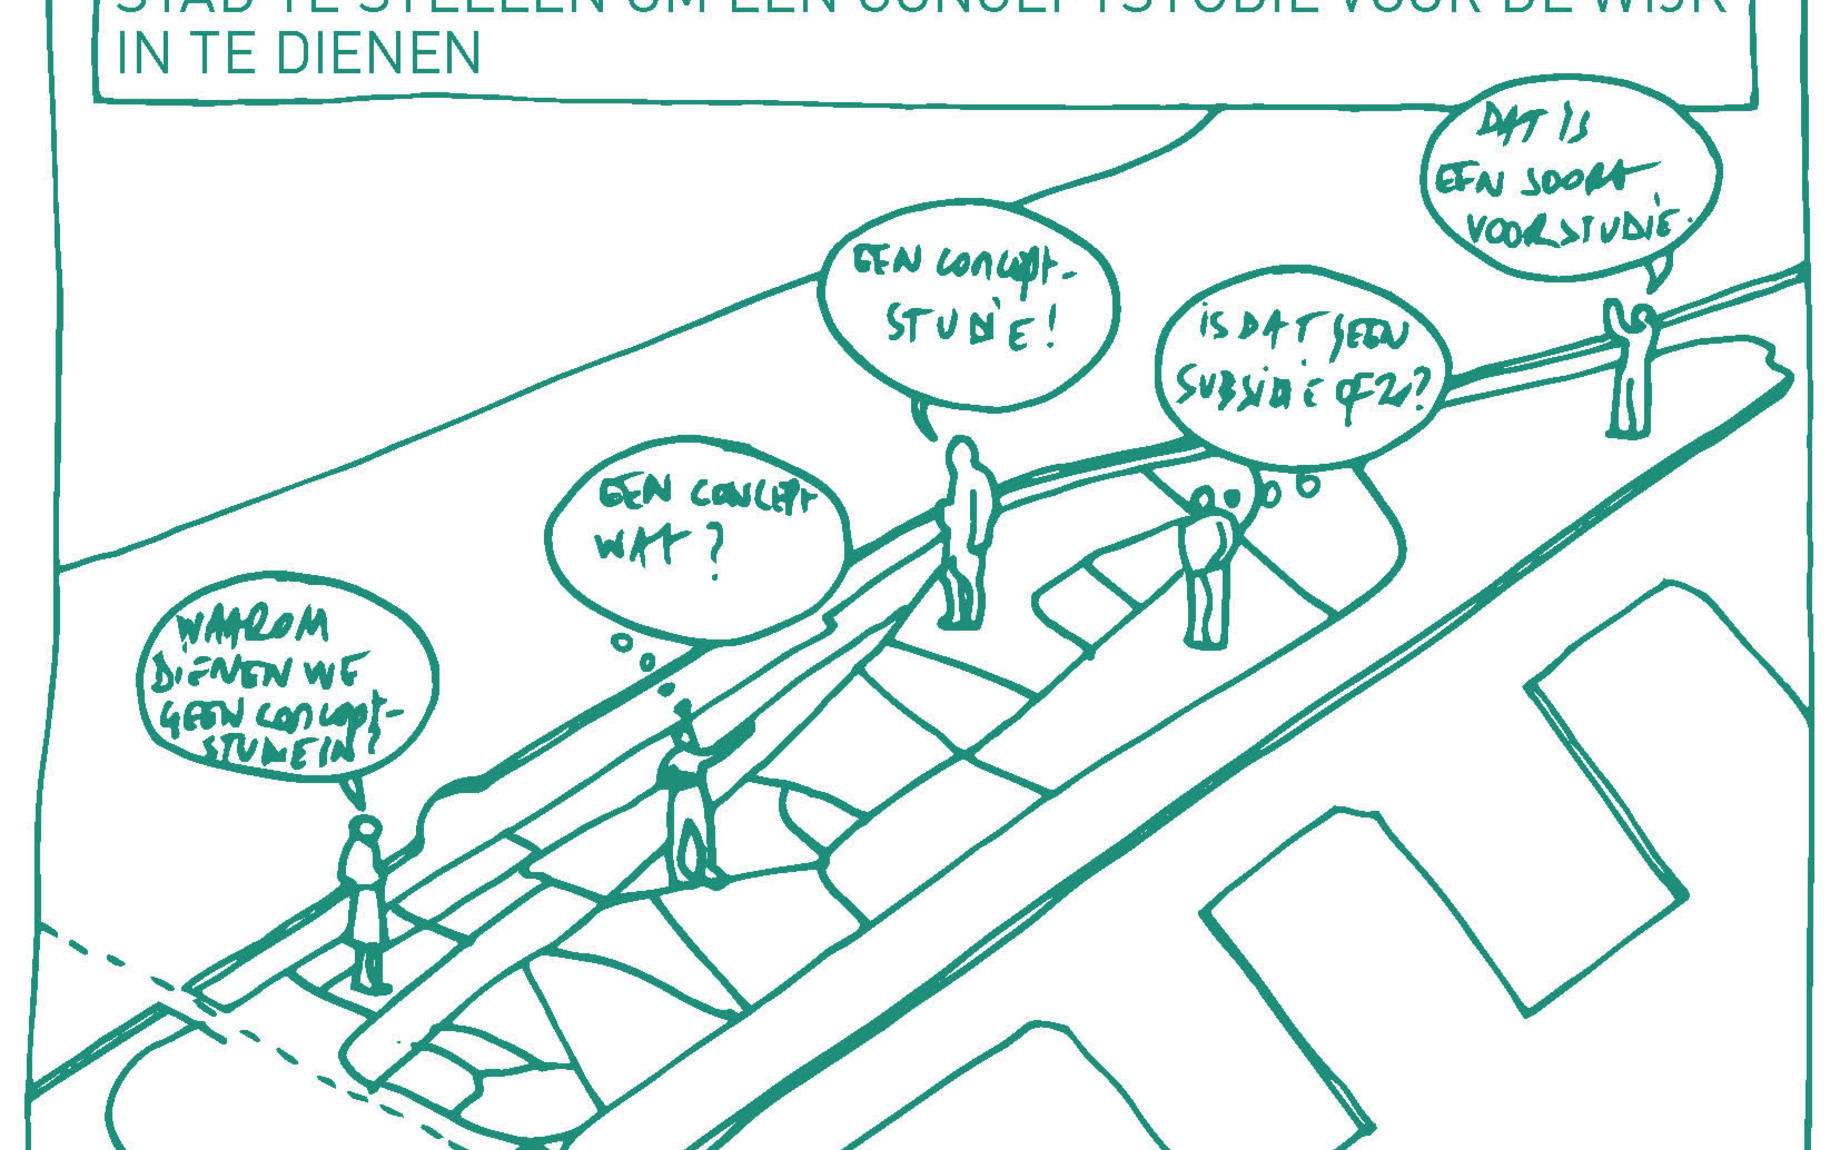 Bewoners Muide-Meulestede vragen aan Stad Gent om samen een conceptstudie aan te vragen